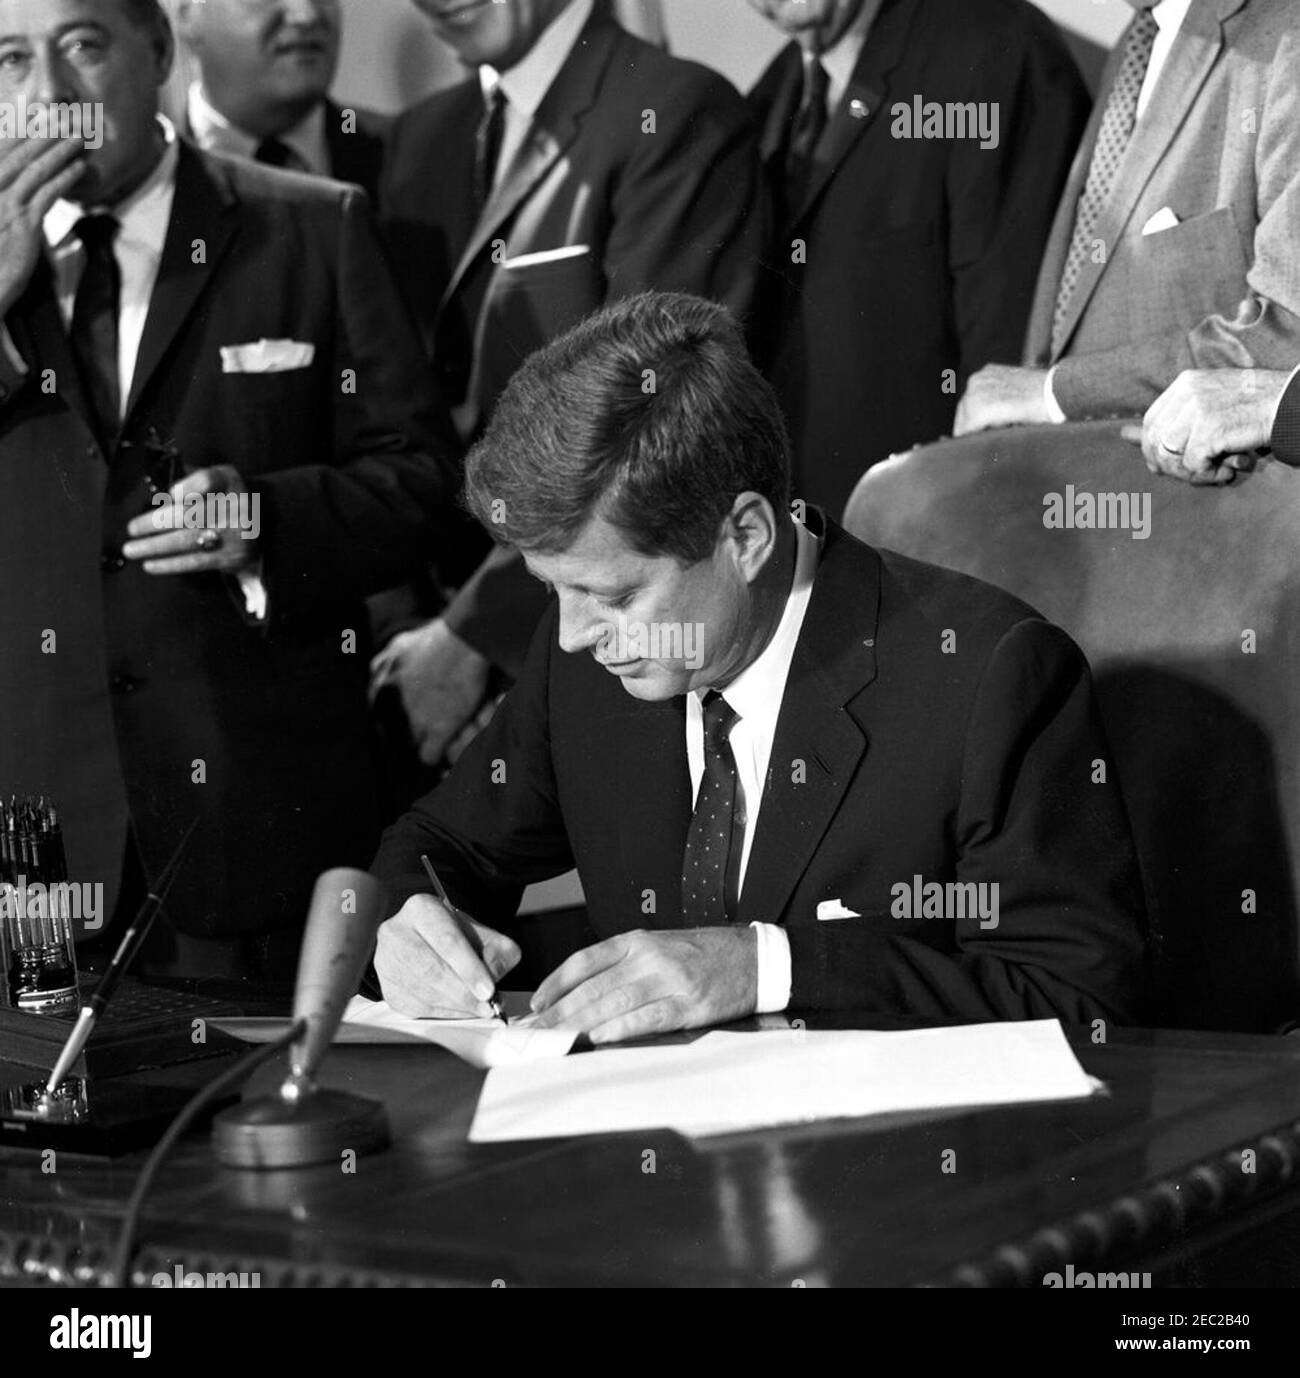 Подписание договора о запрете ядерных испытаний. Конгресс 1962 Джон Кеннеди. Джон Кеннеди, 1959 г.. Подпись Джона Кеннеди. Джон Кеннеди казино.